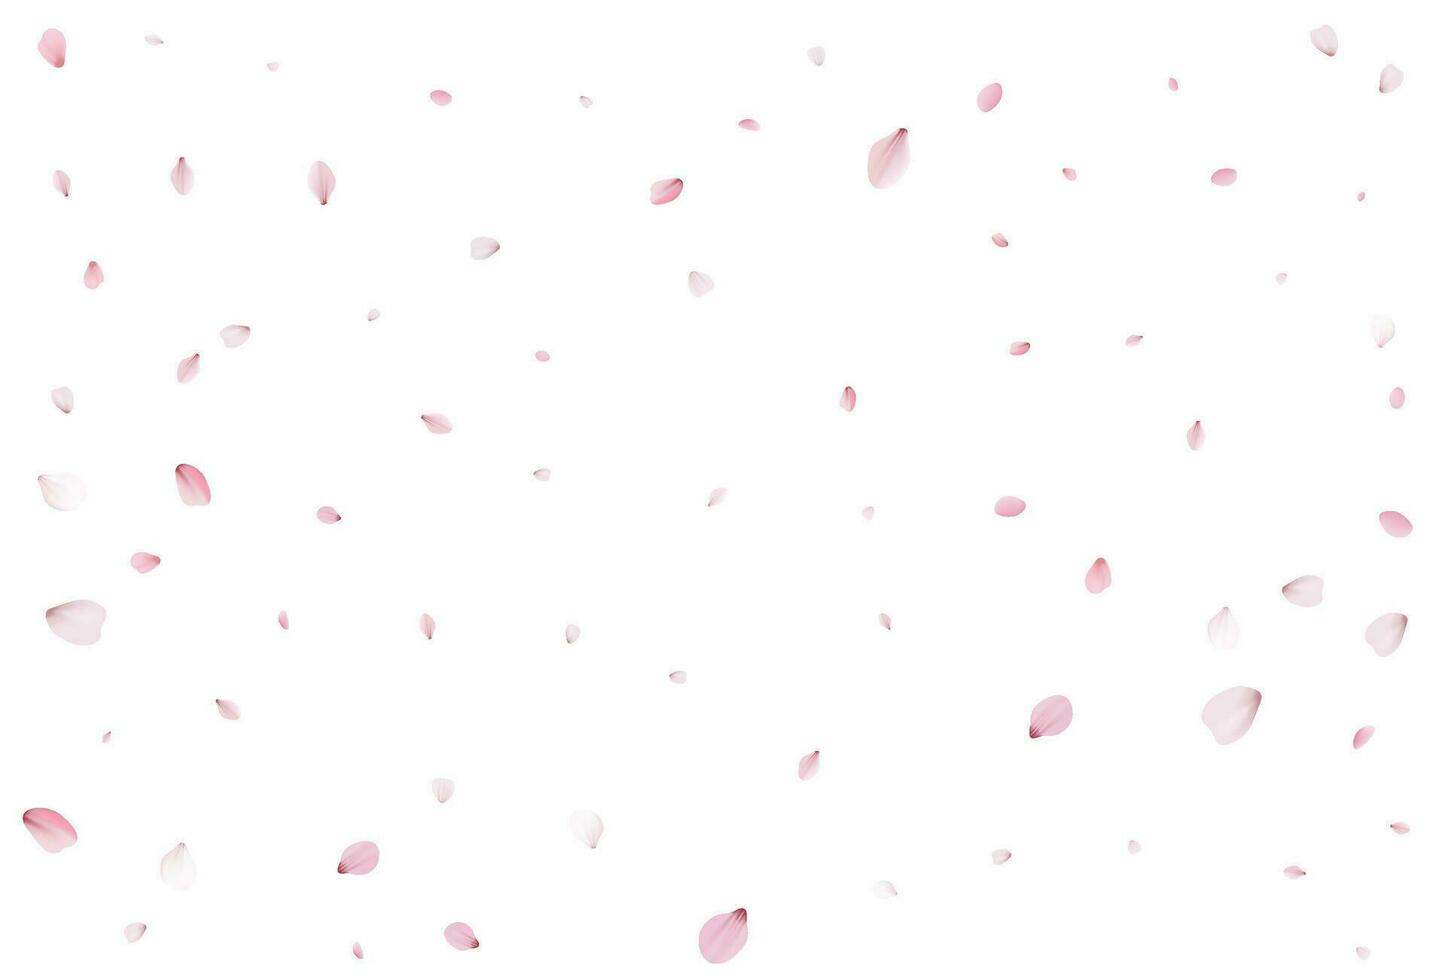 Romantic sakura background. Vector illustration.